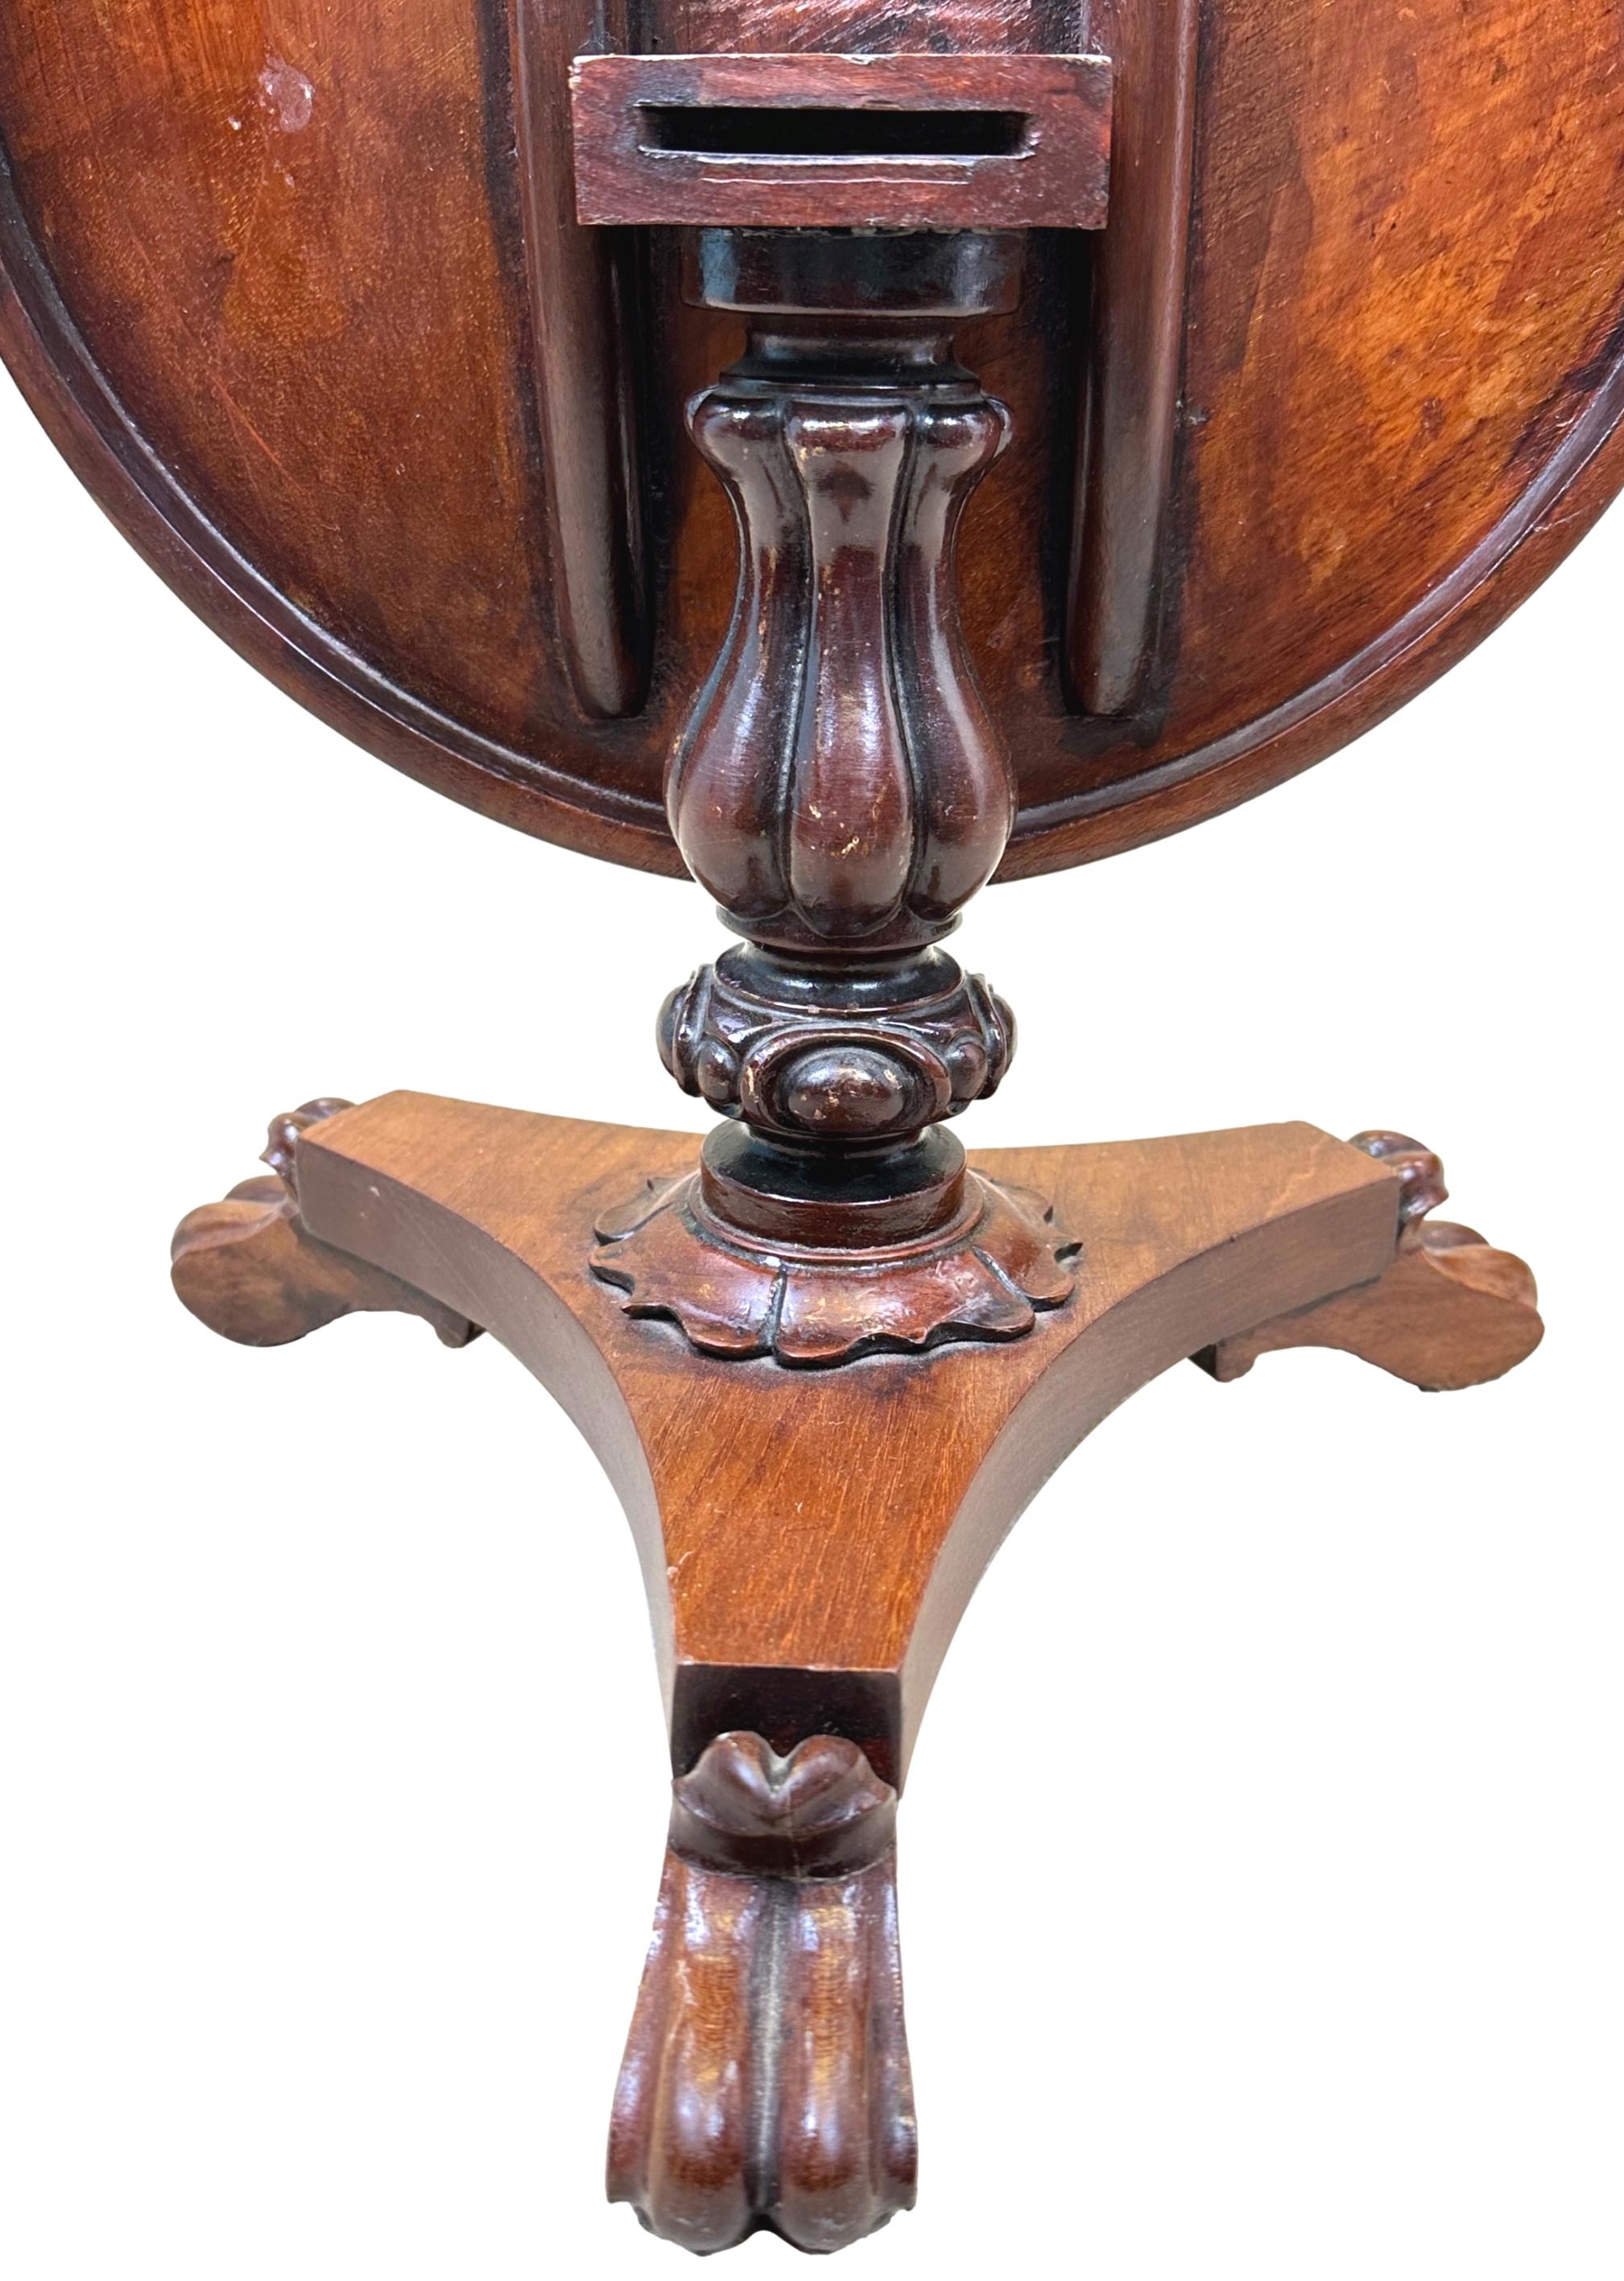 Table de centre miniature en acajou du milieu du XIXe siècle, de qualité exceptionnelle, avec un plateau circulaire basculant superbement figuré, sur une élégante colonne centrale sculptée et une base à plateau triforme, avec des pieds à volutes